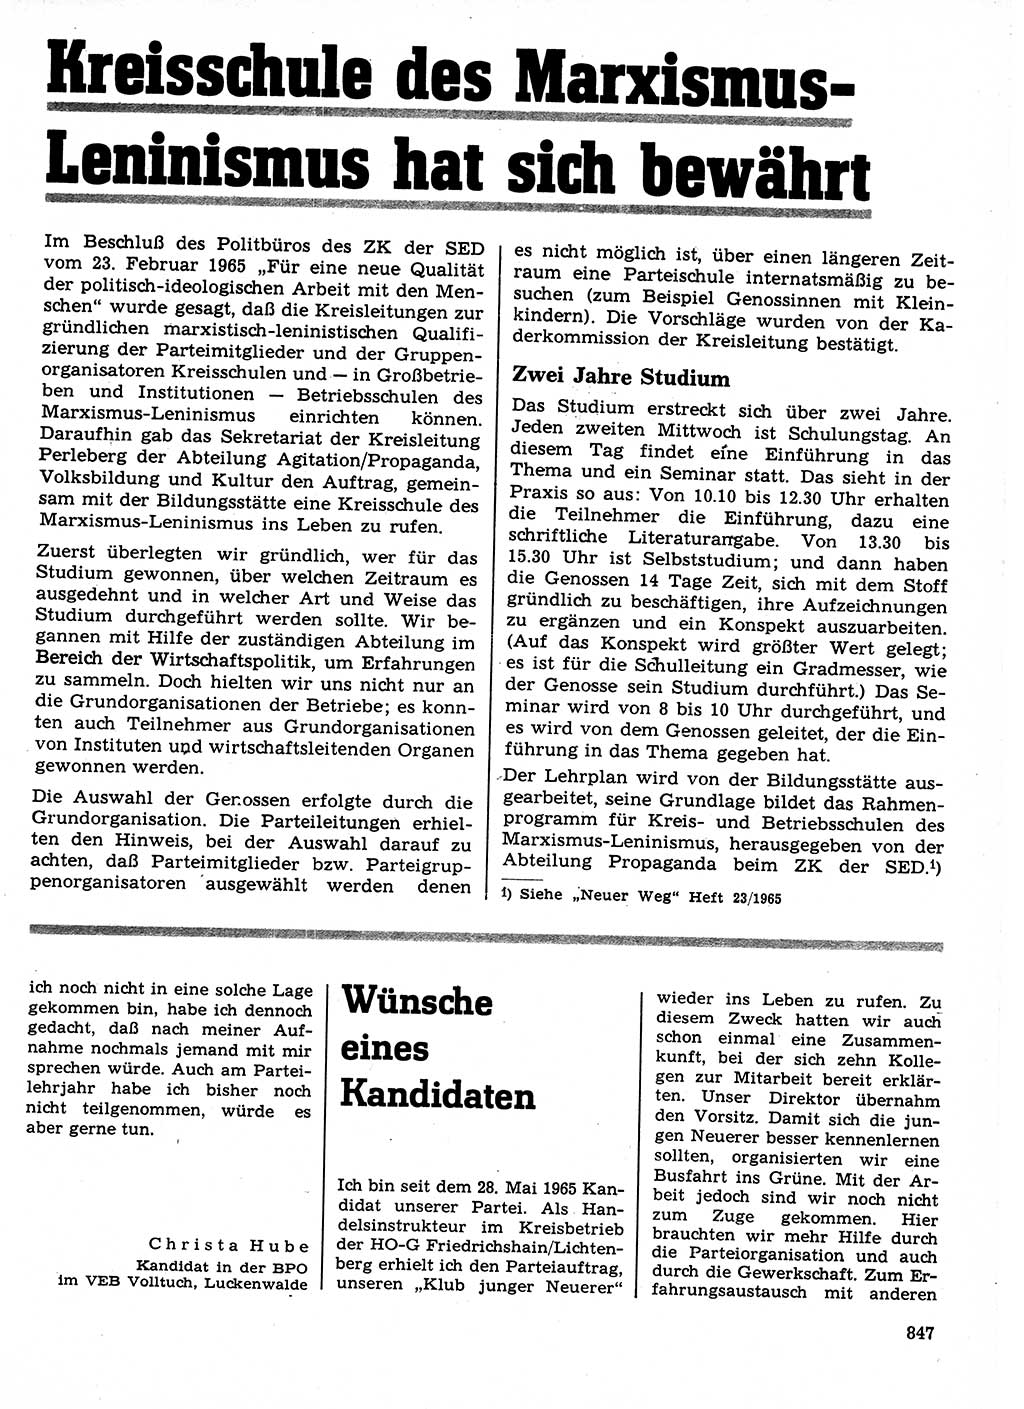 Neuer Weg (NW), Organ des Zentralkomitees (ZK) der SED (Sozialistische Einheitspartei Deutschlands) für Fragen des Parteilebens, 21. Jahrgang [Deutsche Demokratische Republik (DDR)] 1966, Seite 847 (NW ZK SED DDR 1966, S. 847)